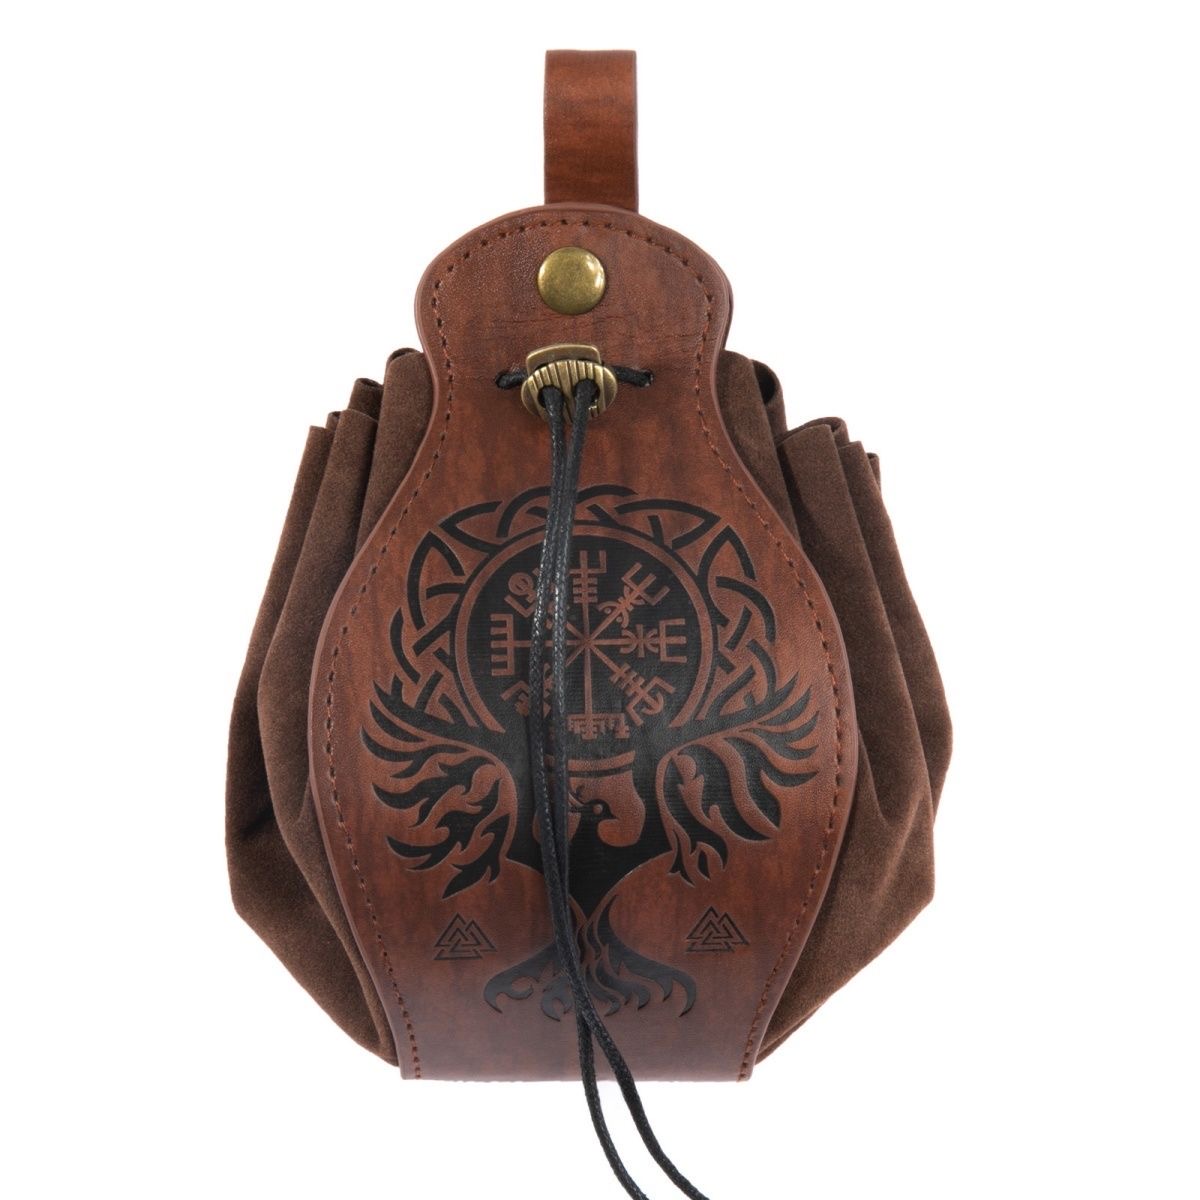 Rétro Fanny pack chaud style Viking médiéval Faux cuir hommes sac Vintage ceinture pochette peut accrocher ceinture porte-monnaie dés sac